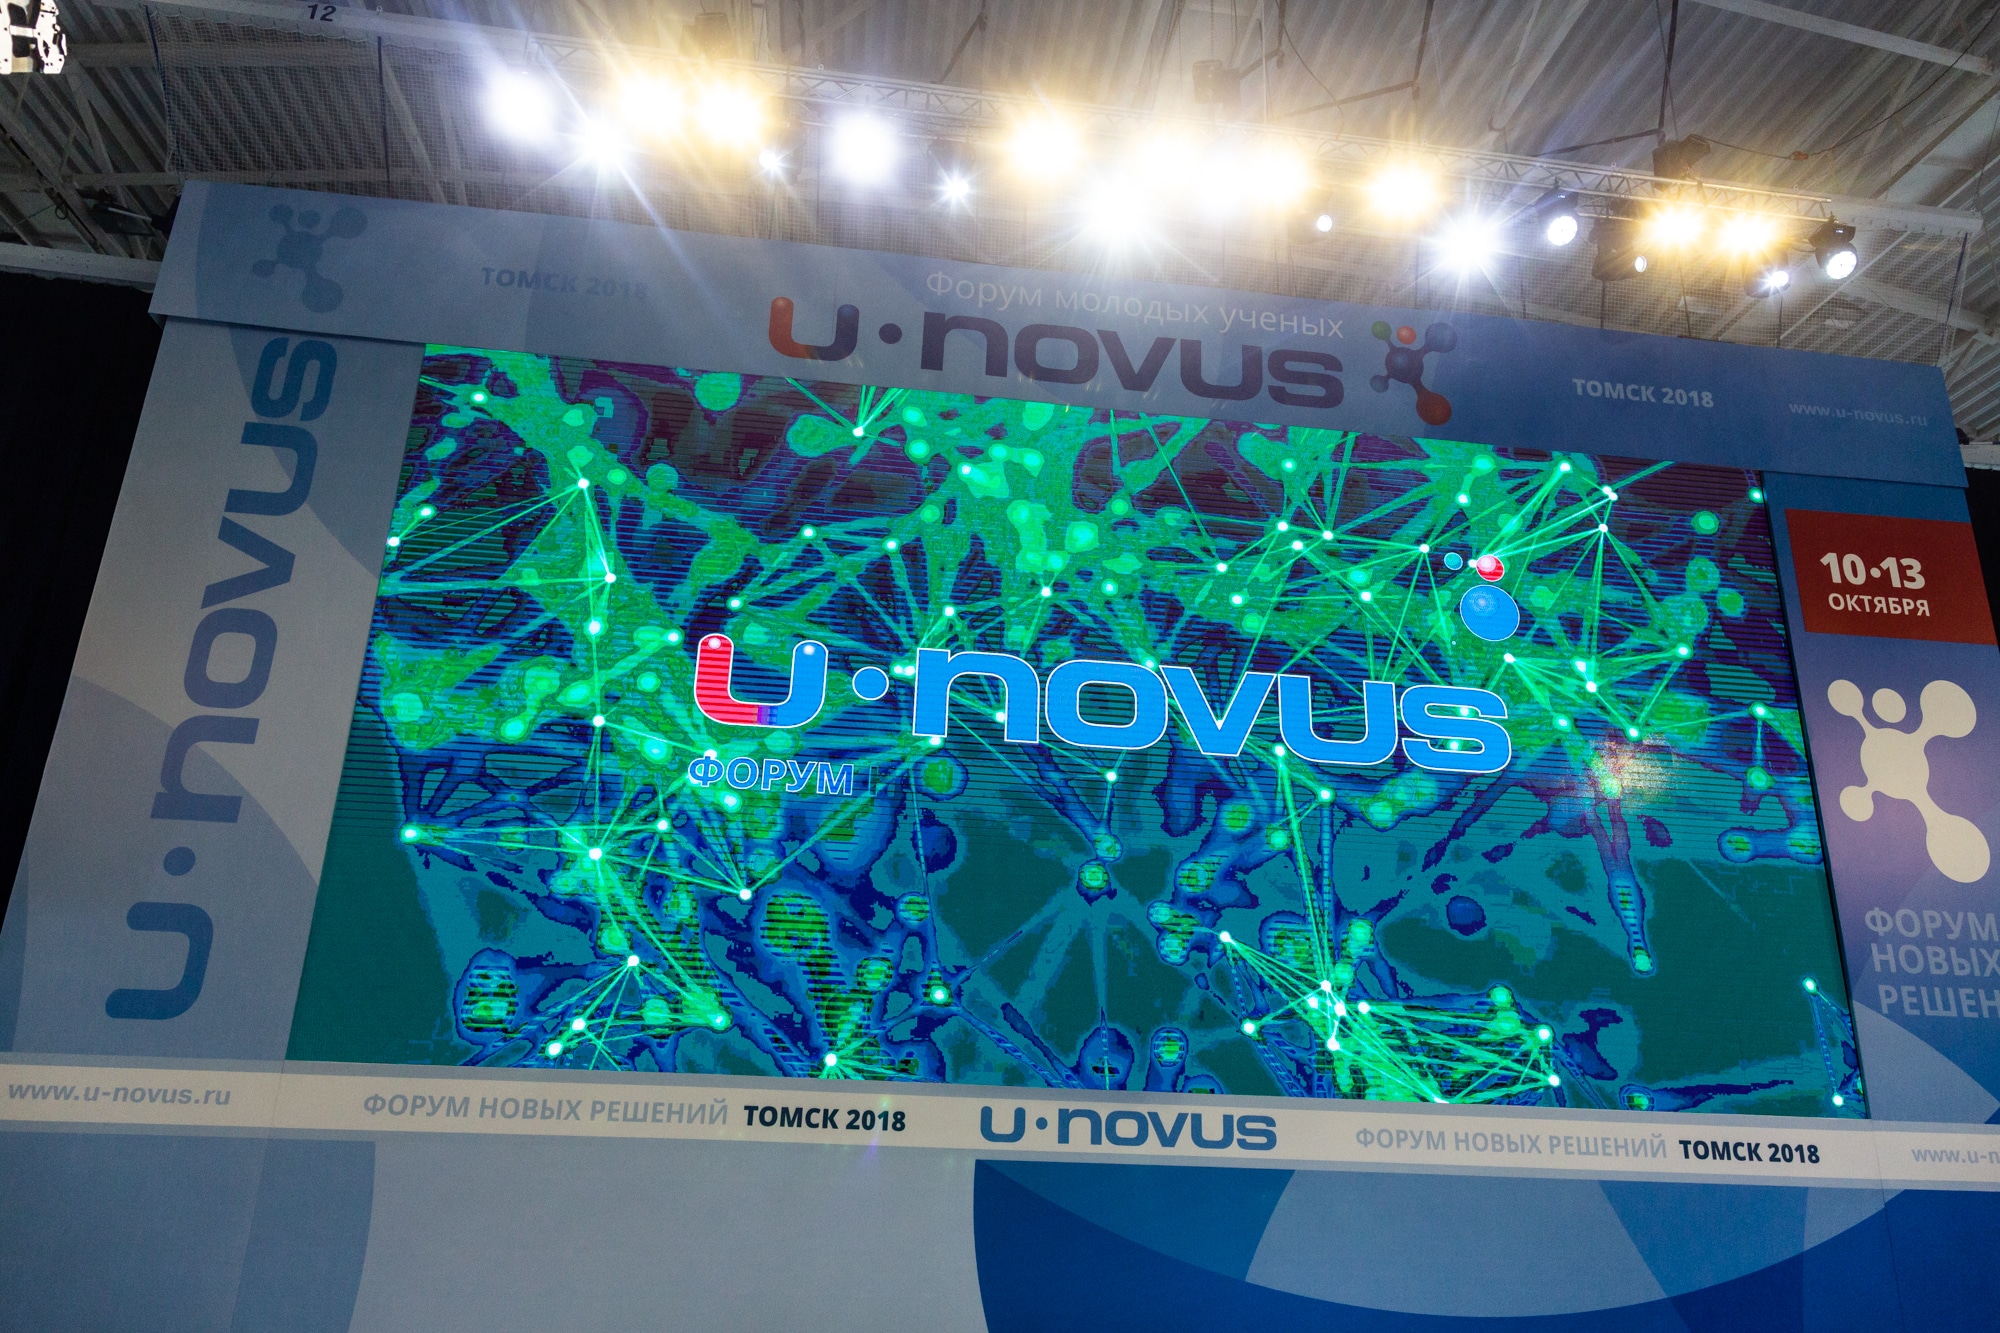 U-NOVUS, Томские новости, U-novus юновус unovus форум В Томске на U-NOVUS пройдут открытые лекции технологических лидеров